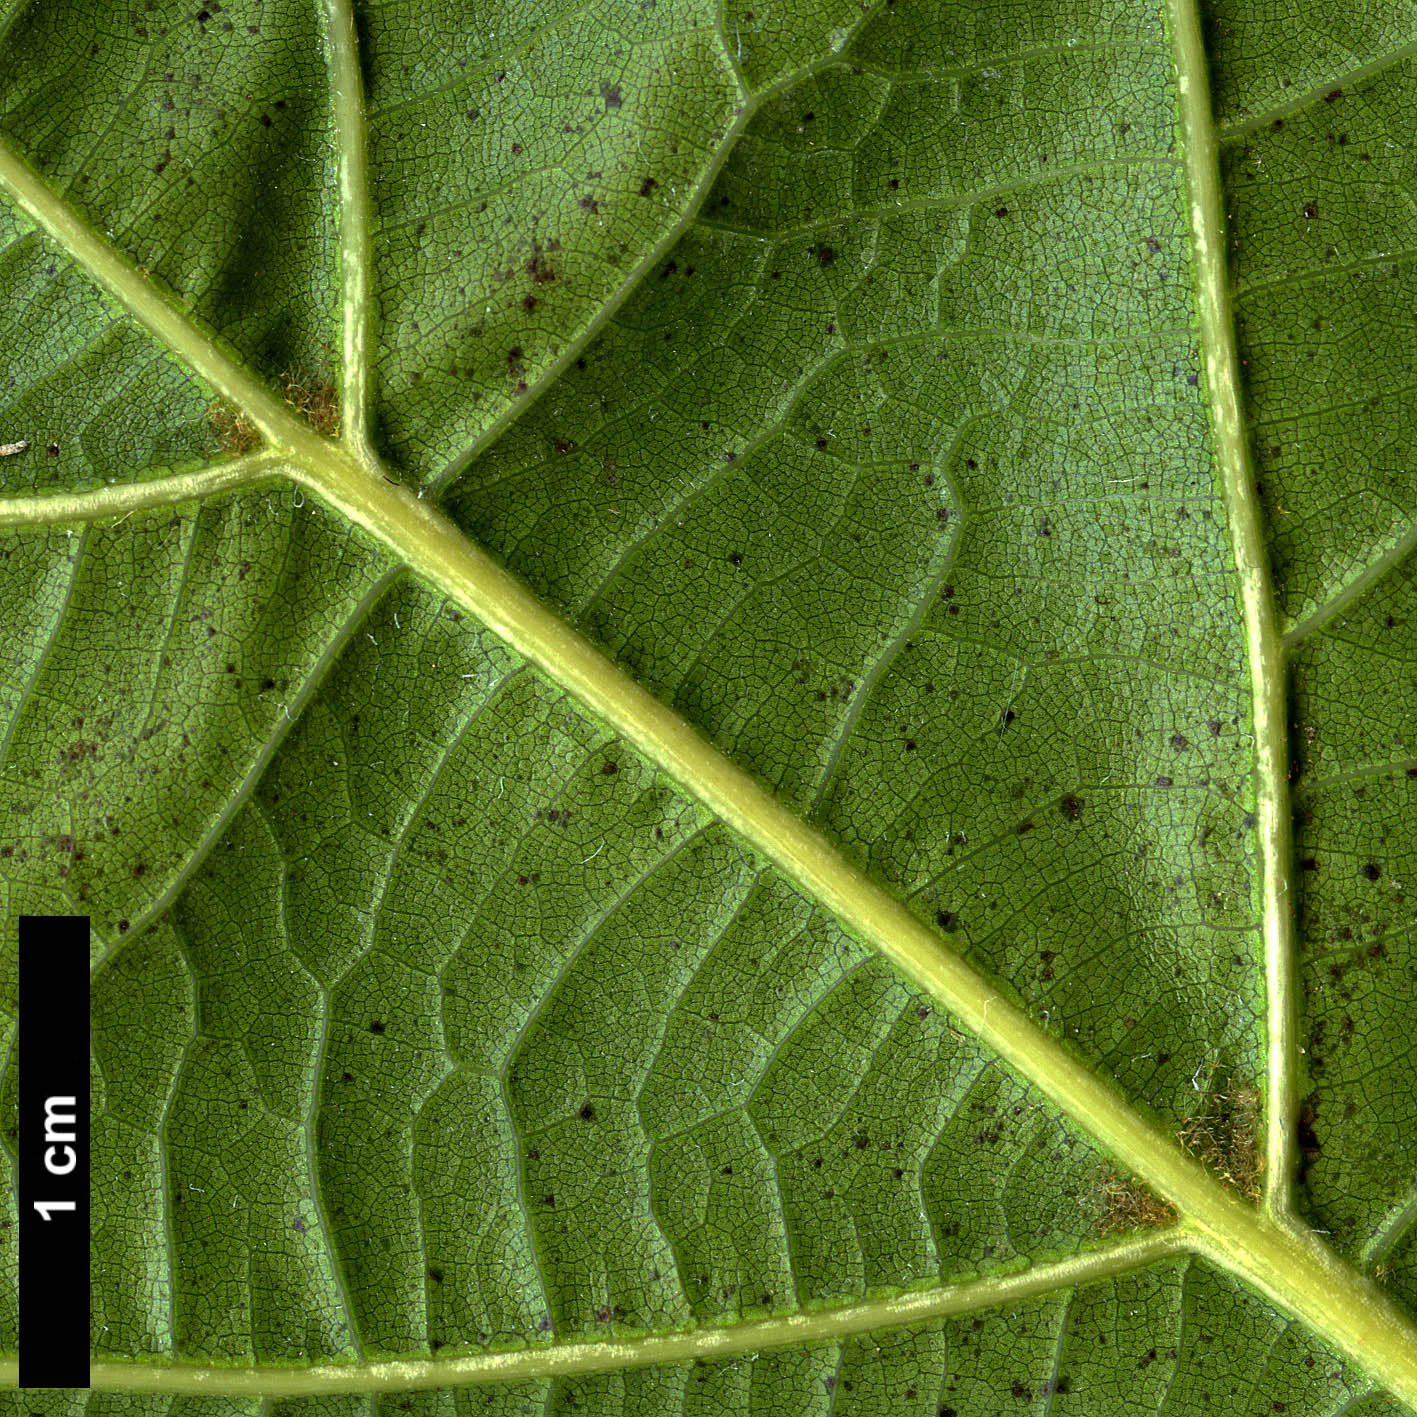 High resolution image: Family: Fagaceae - Genus: Quercus - Taxon: 'Chocha'